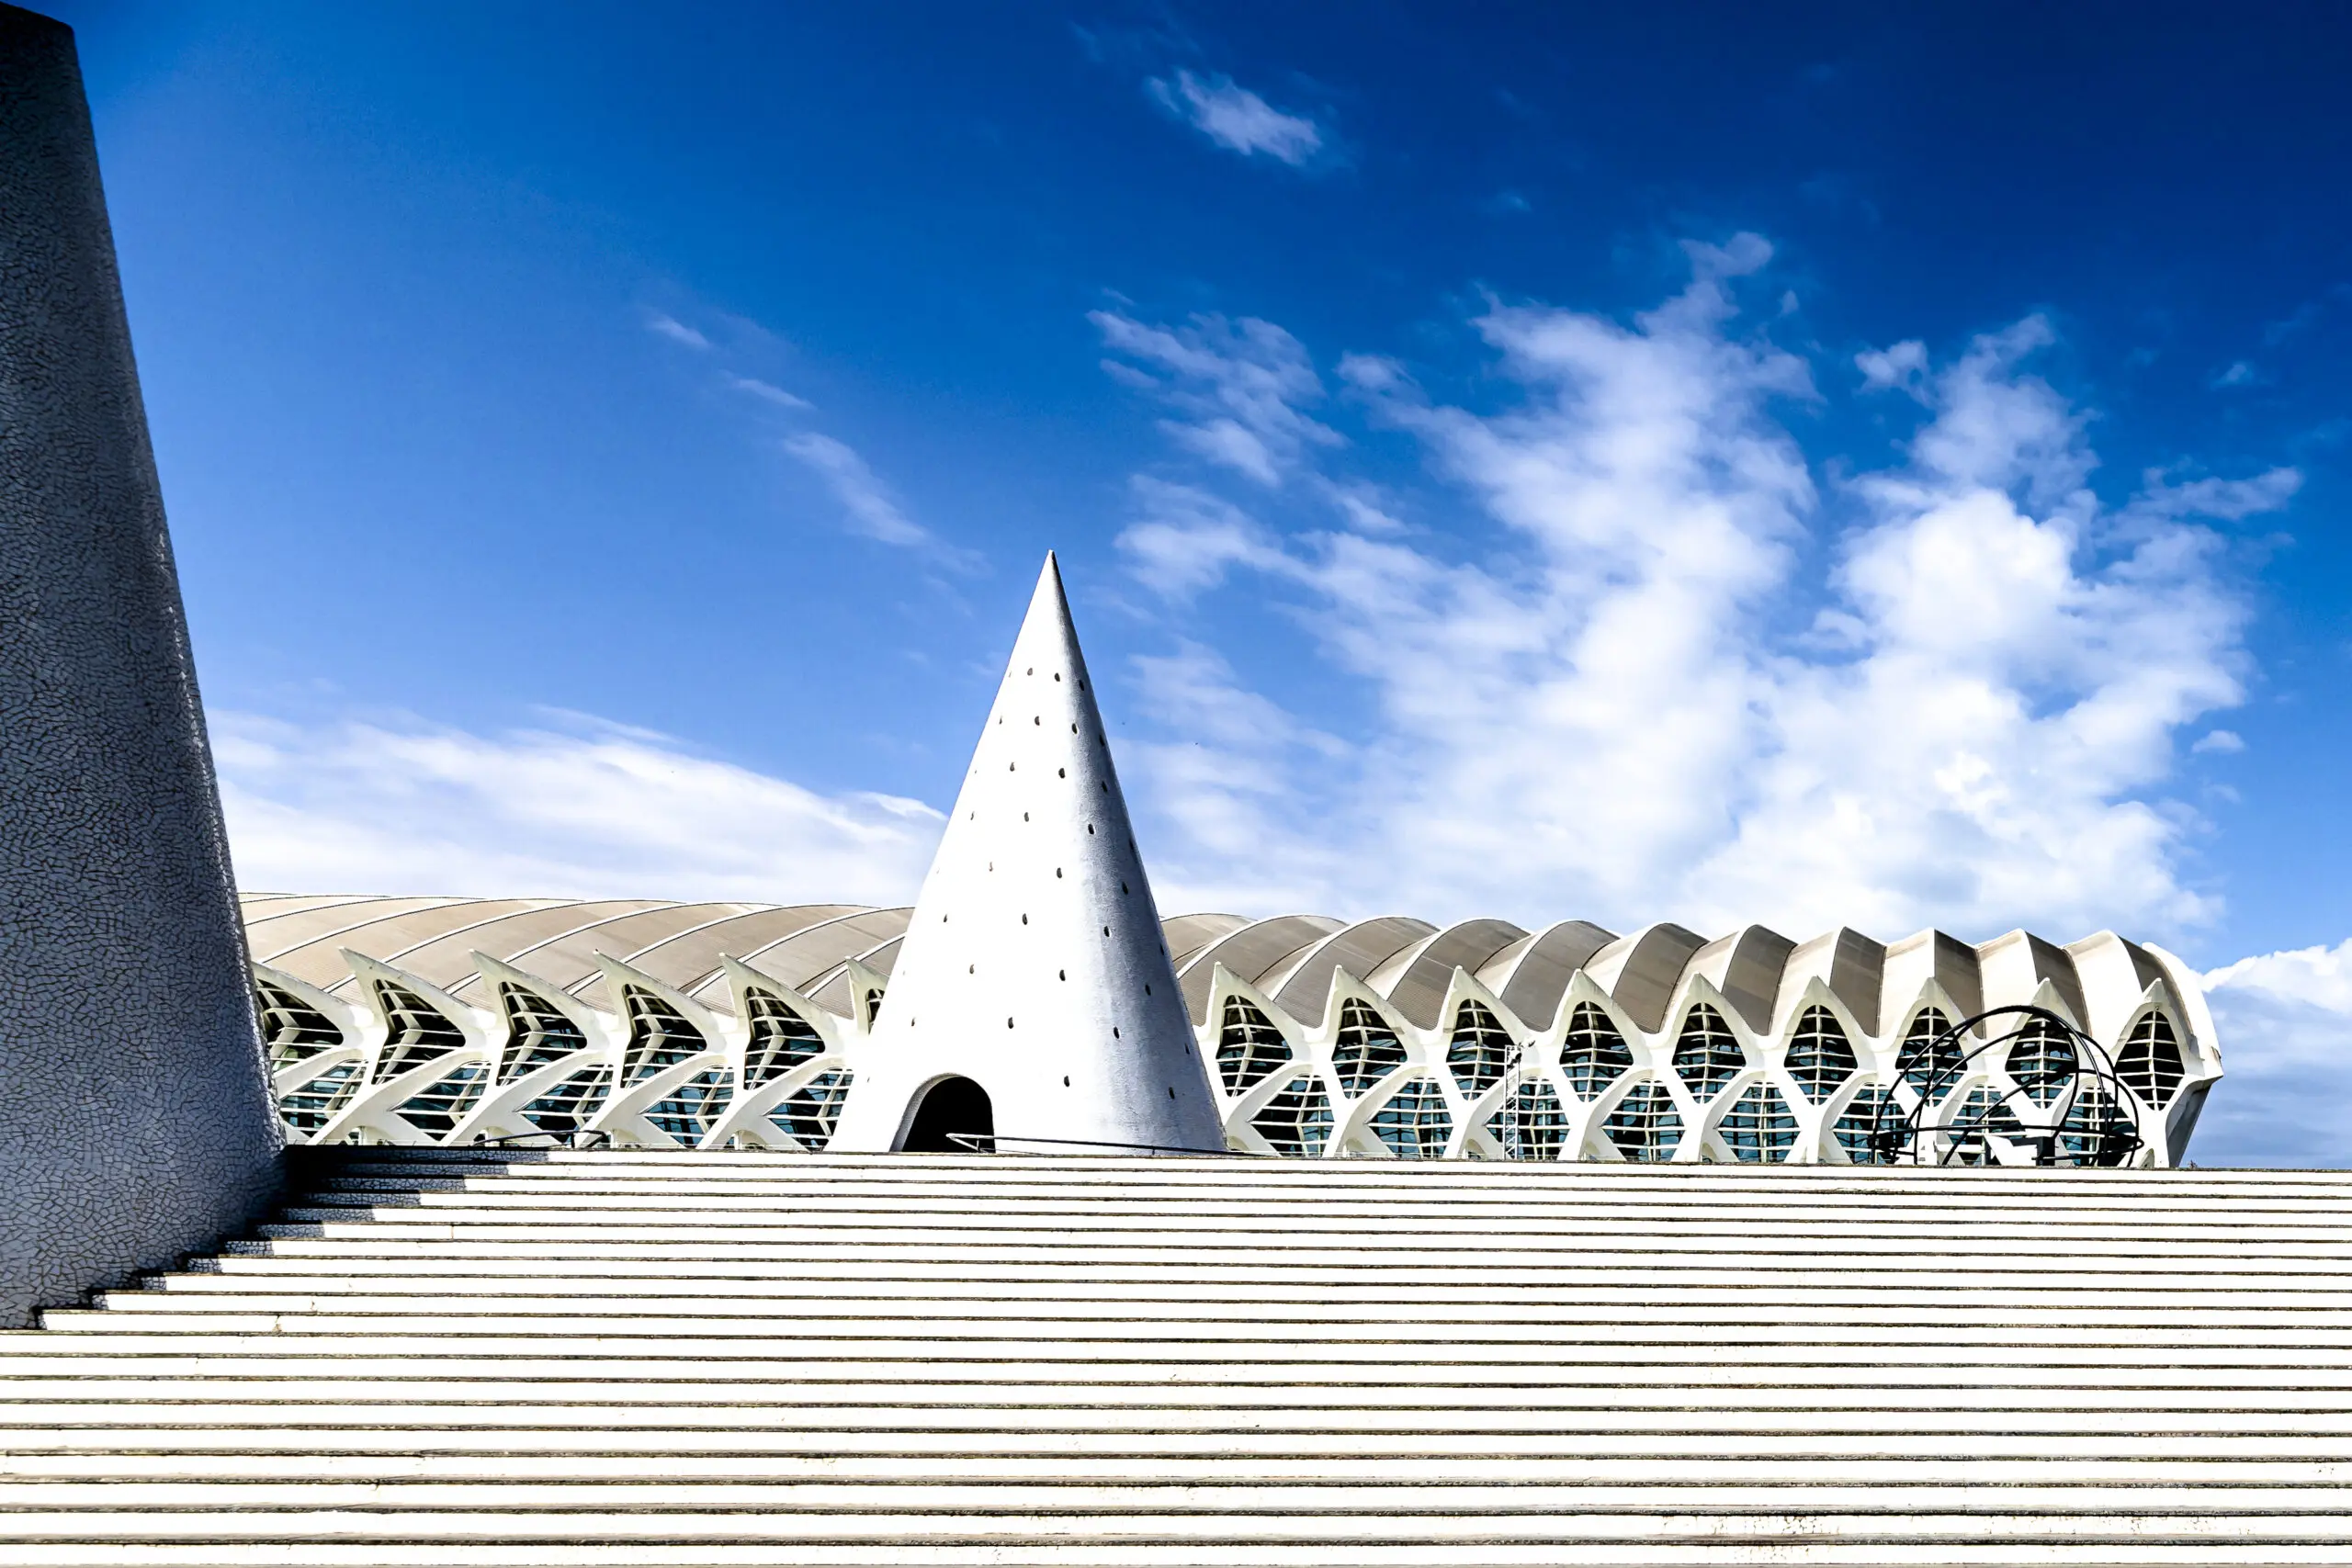 Wandbild (5989) Valencia I präsentiert: Details und Strukturen,Architektur,Sonstige Architektur,Sehenswürdigkeiten,Treppe,Architekturdetails